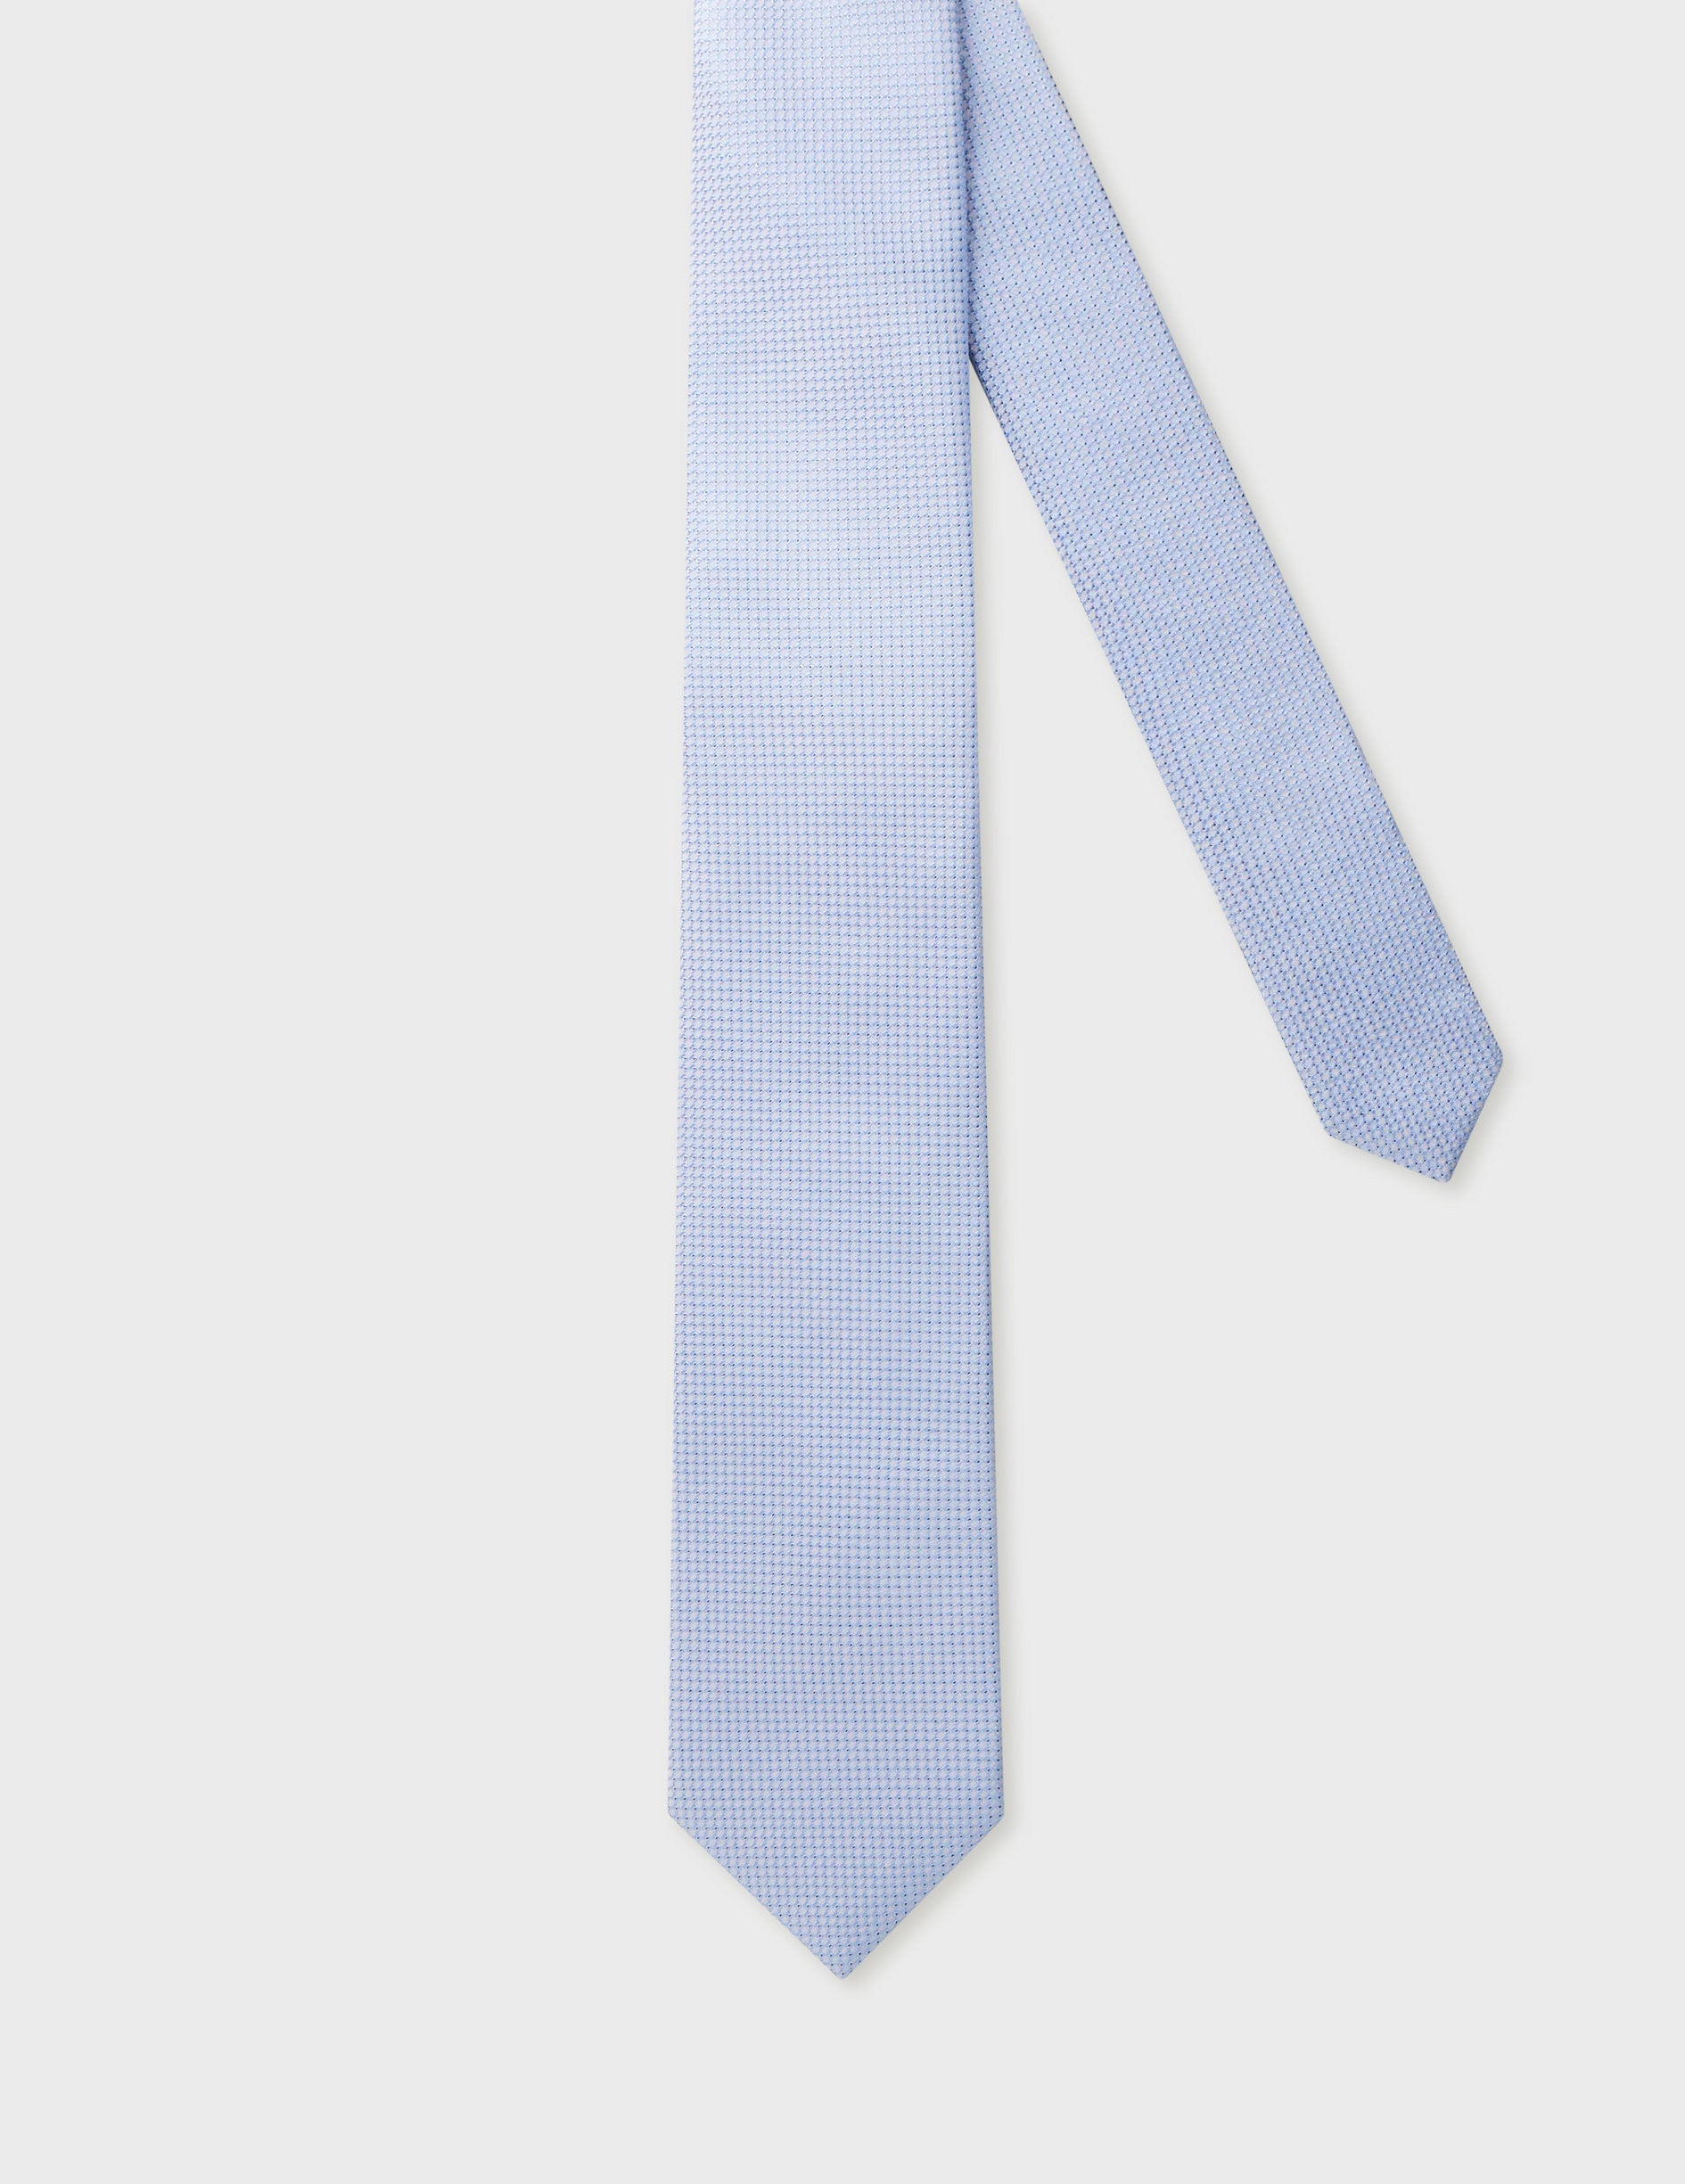 Cravate en soie bleue claire à motifs